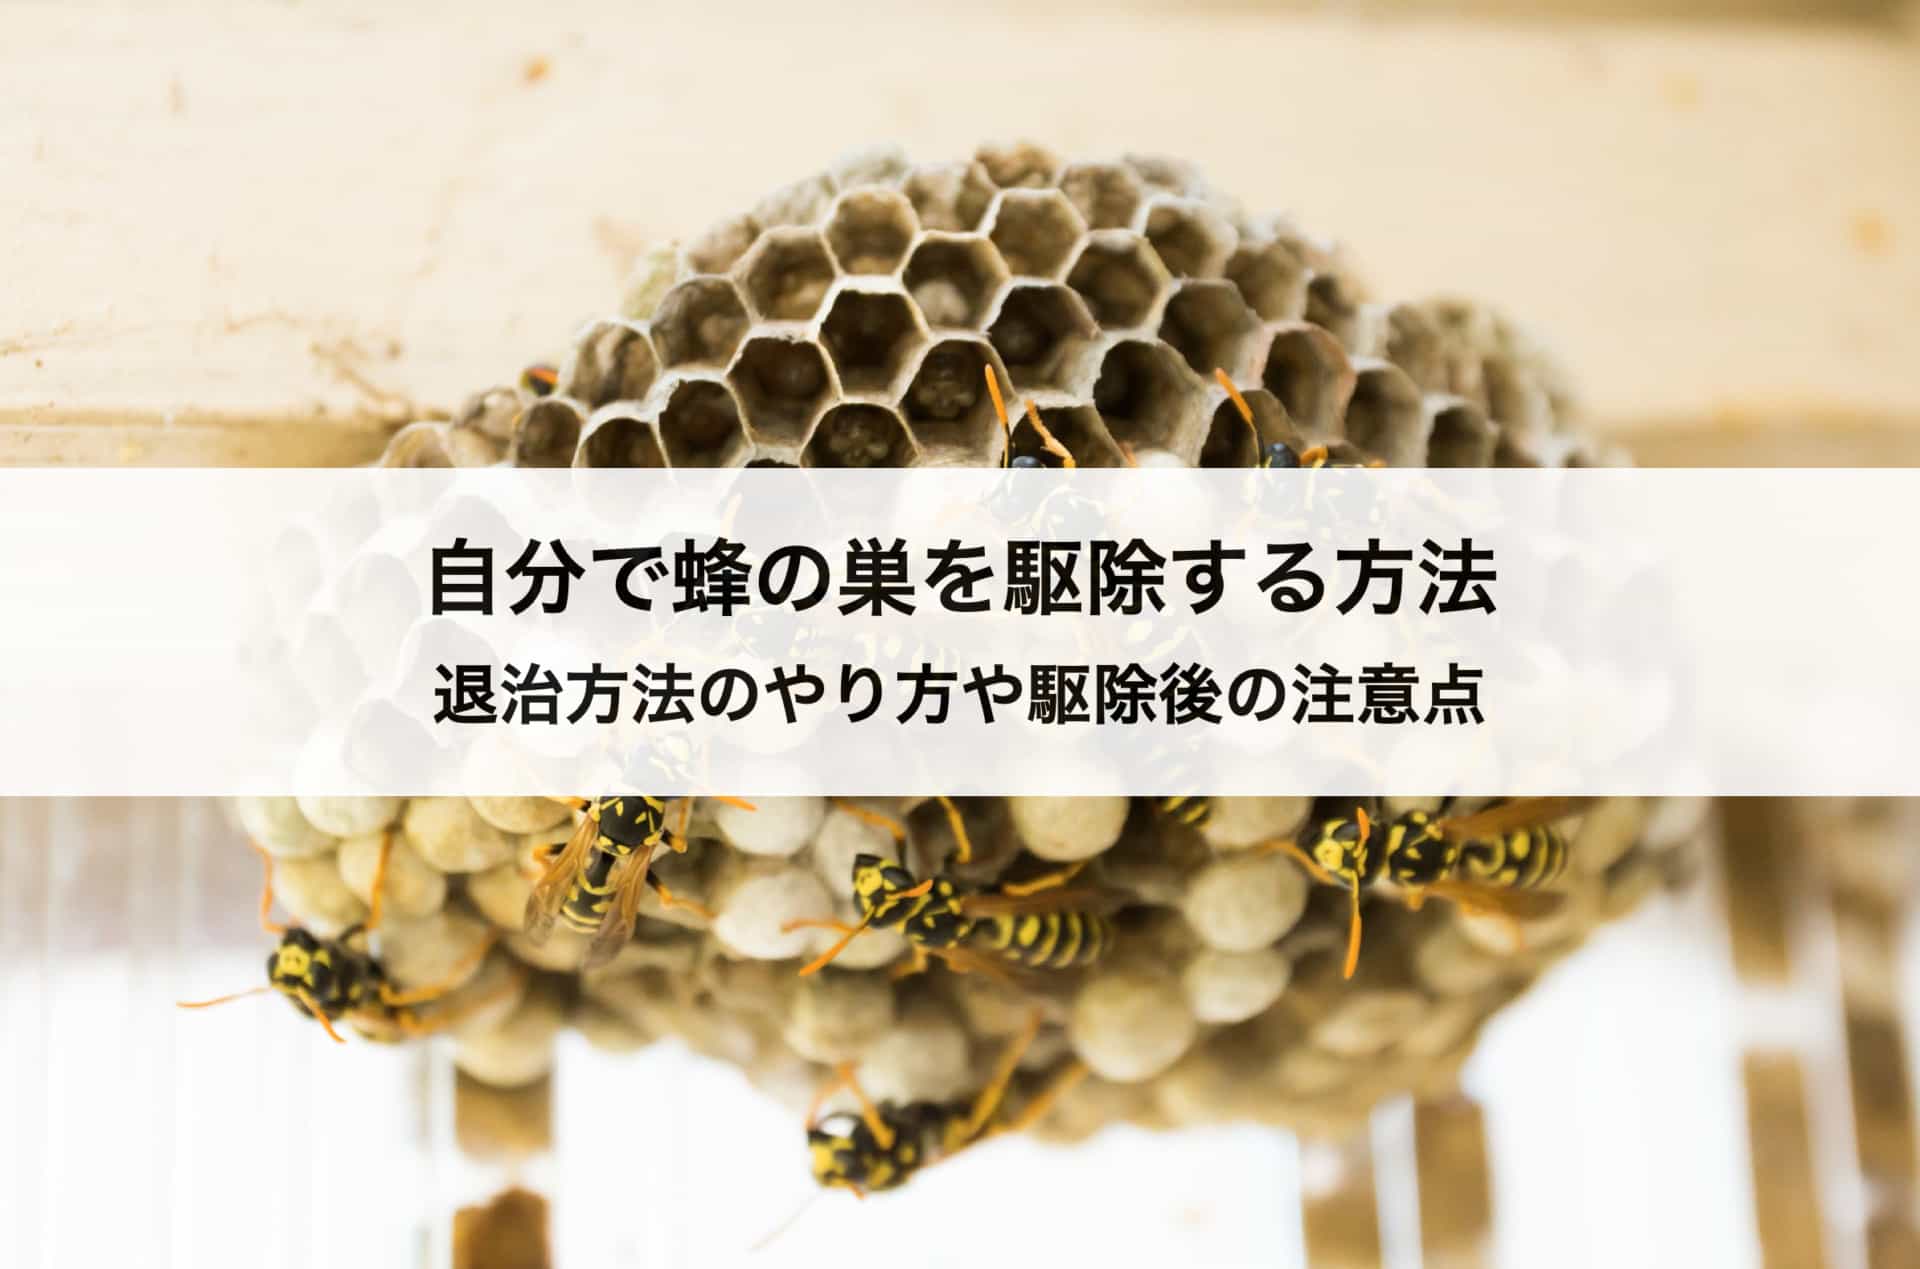 自分で蜂の巣を駆除する方法 退治方法のやり方や駆除後の